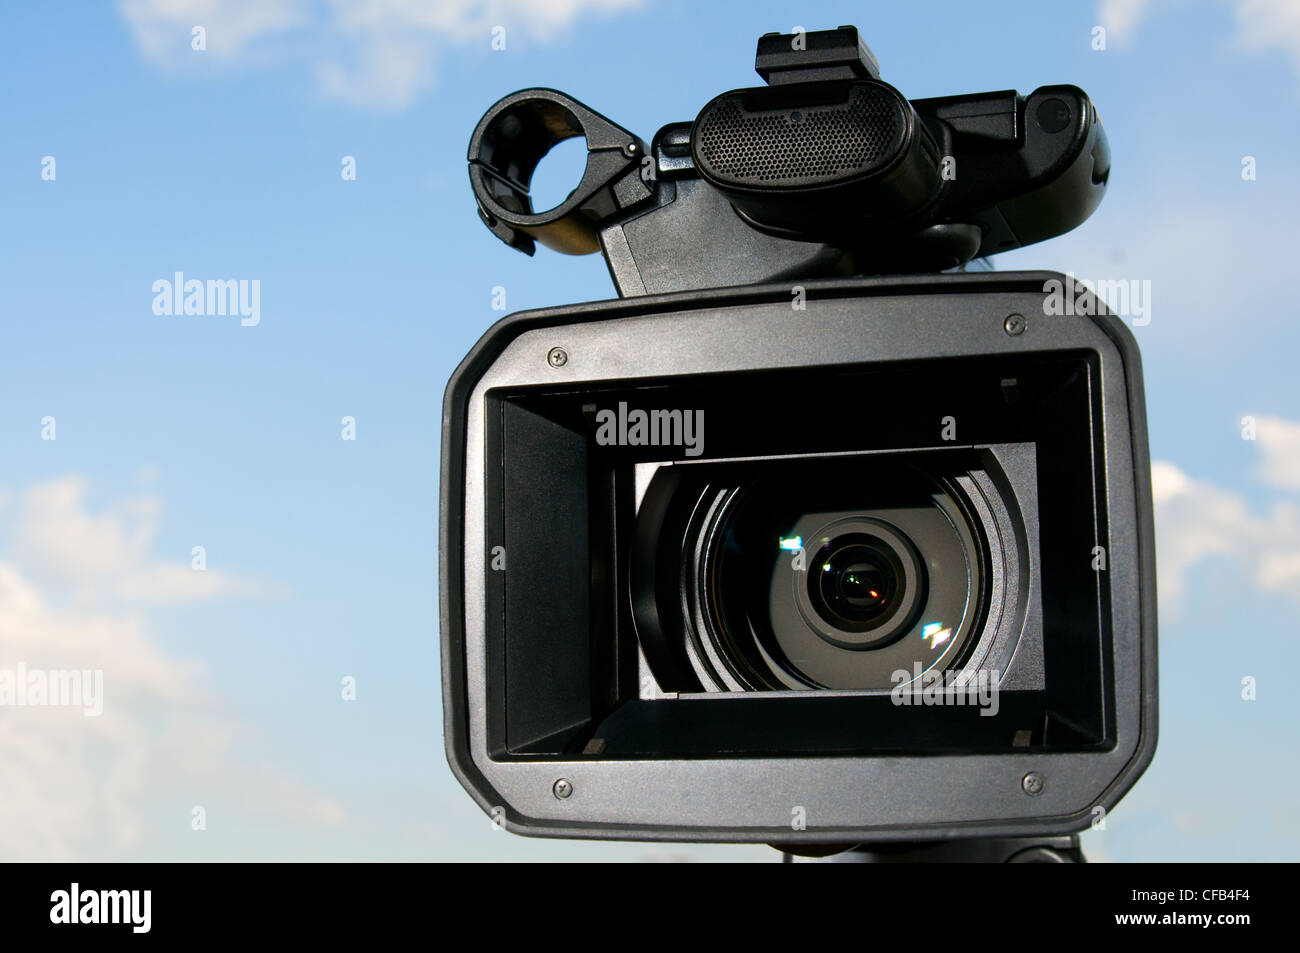 Videocamera digitale immagini e fotografie stock ad alta